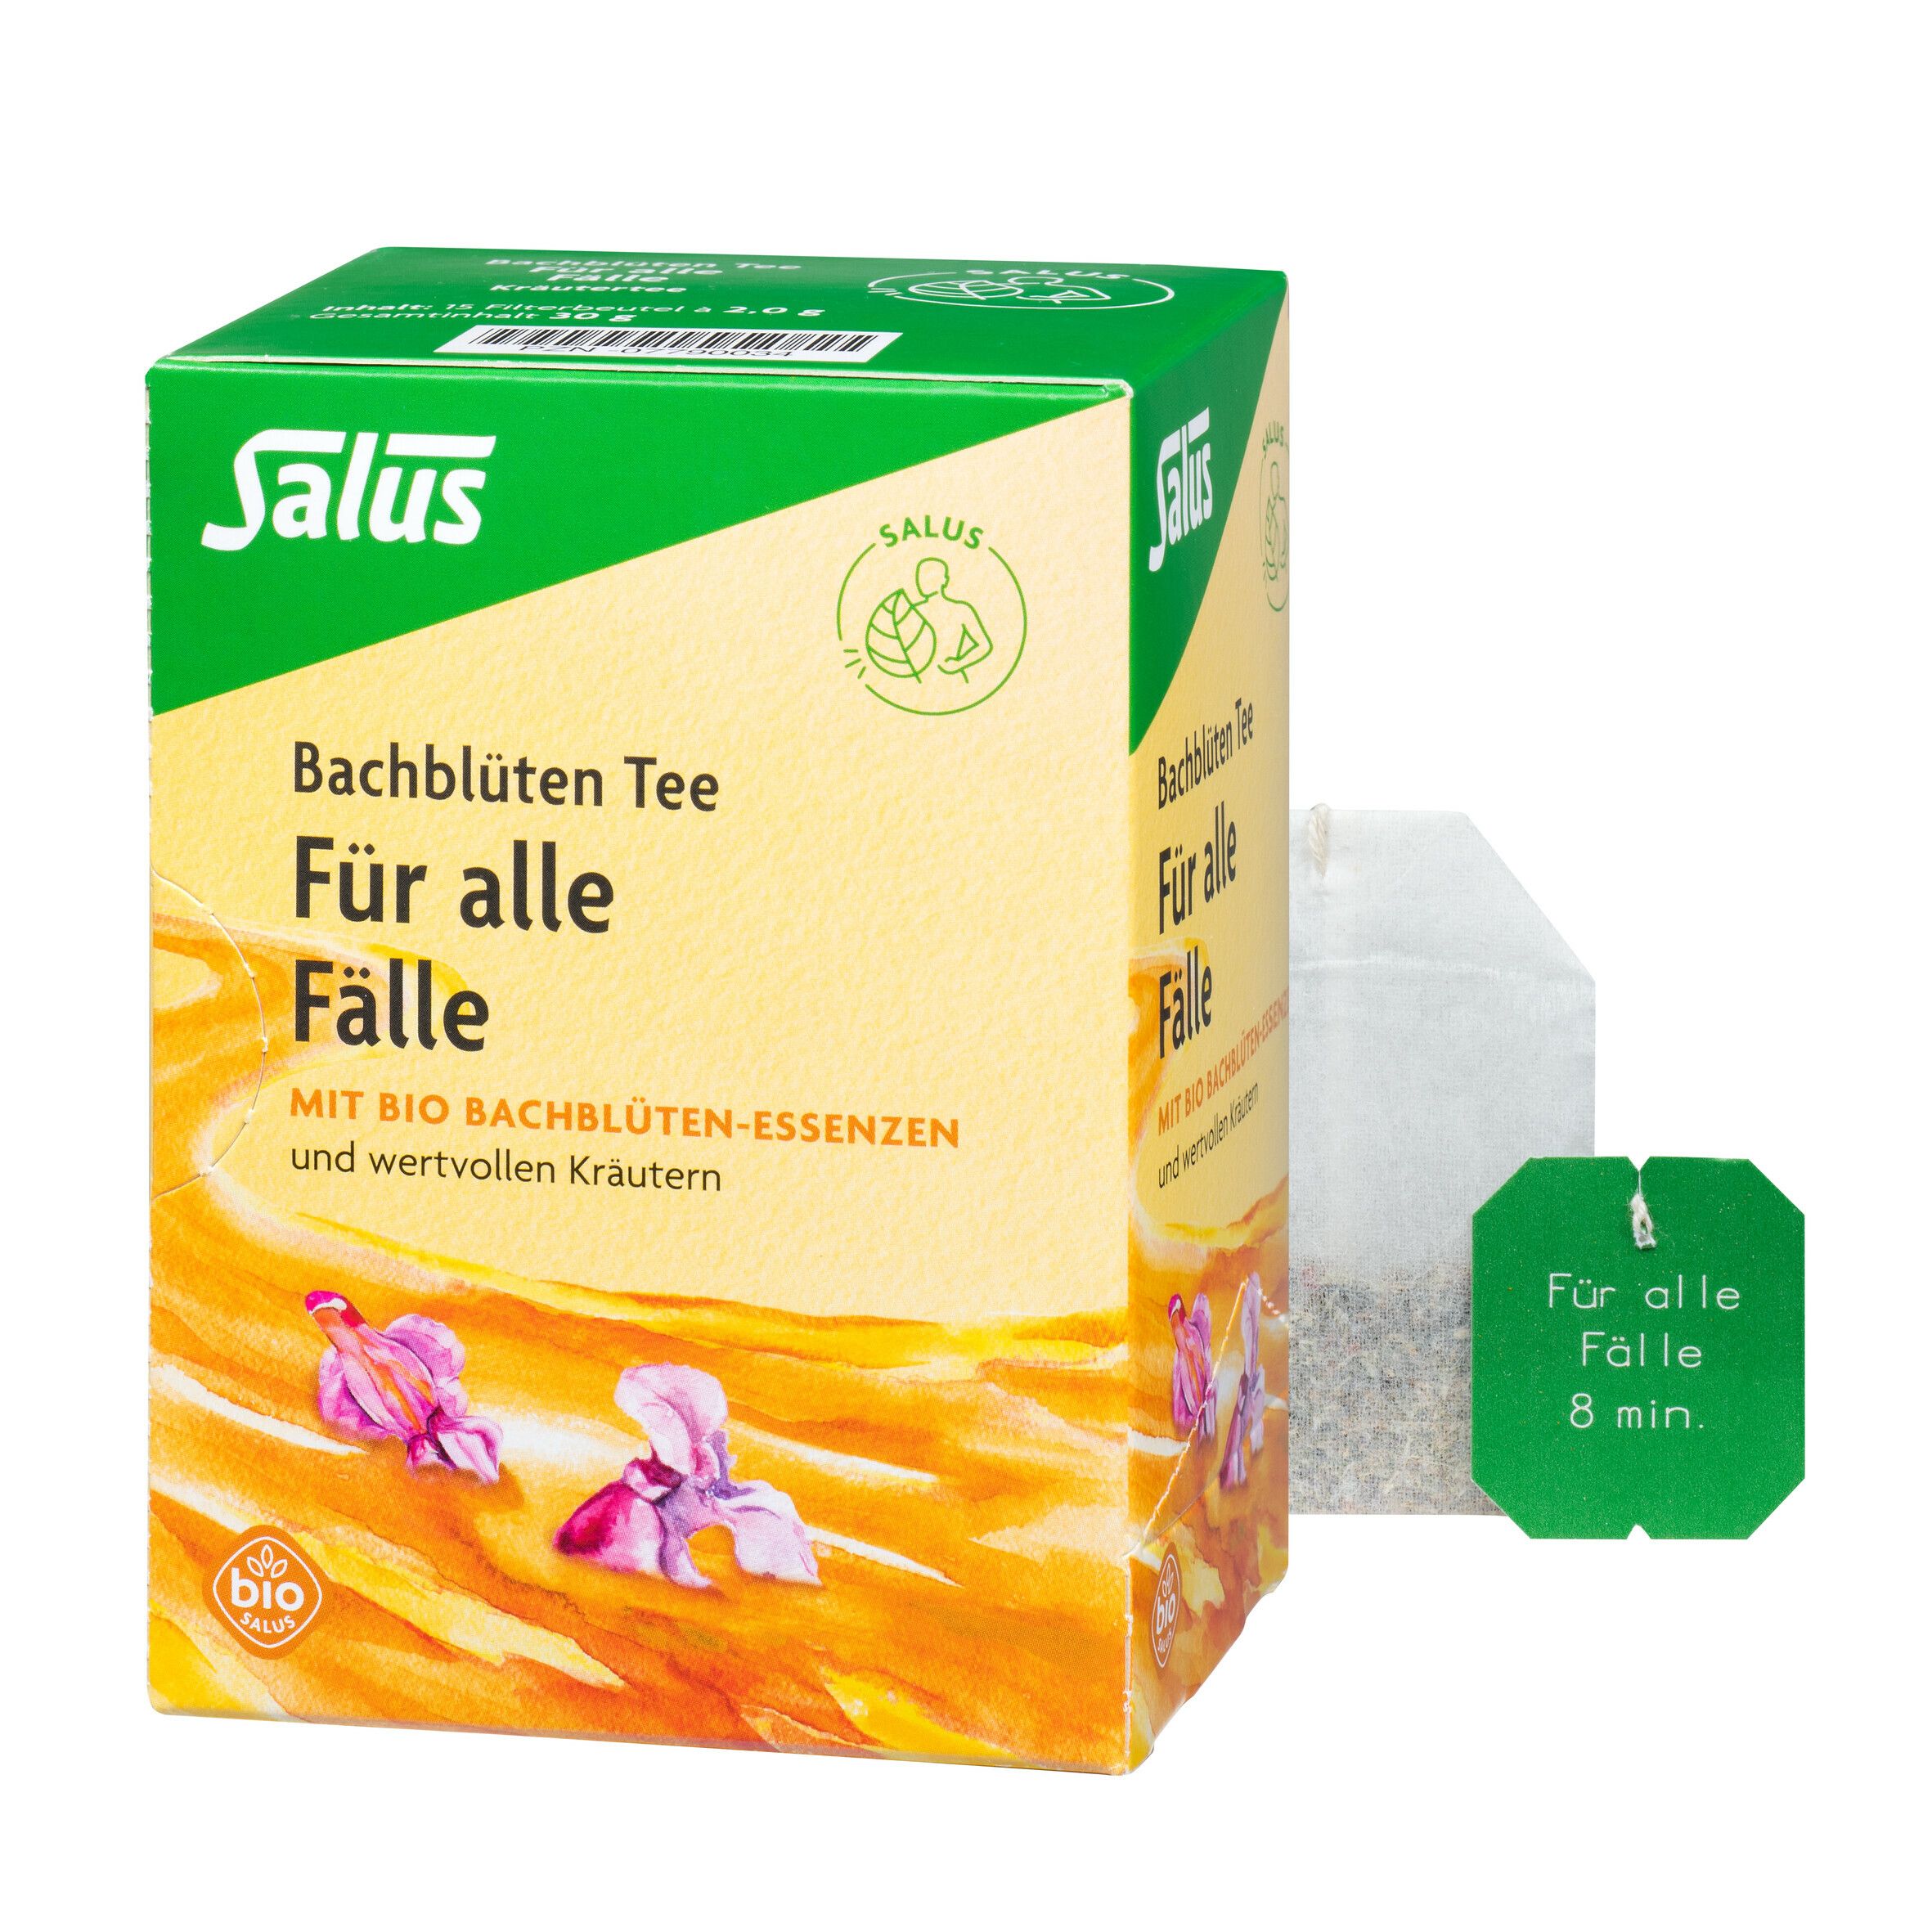 Salus® Bachblüten-Tee Für alle Fälle